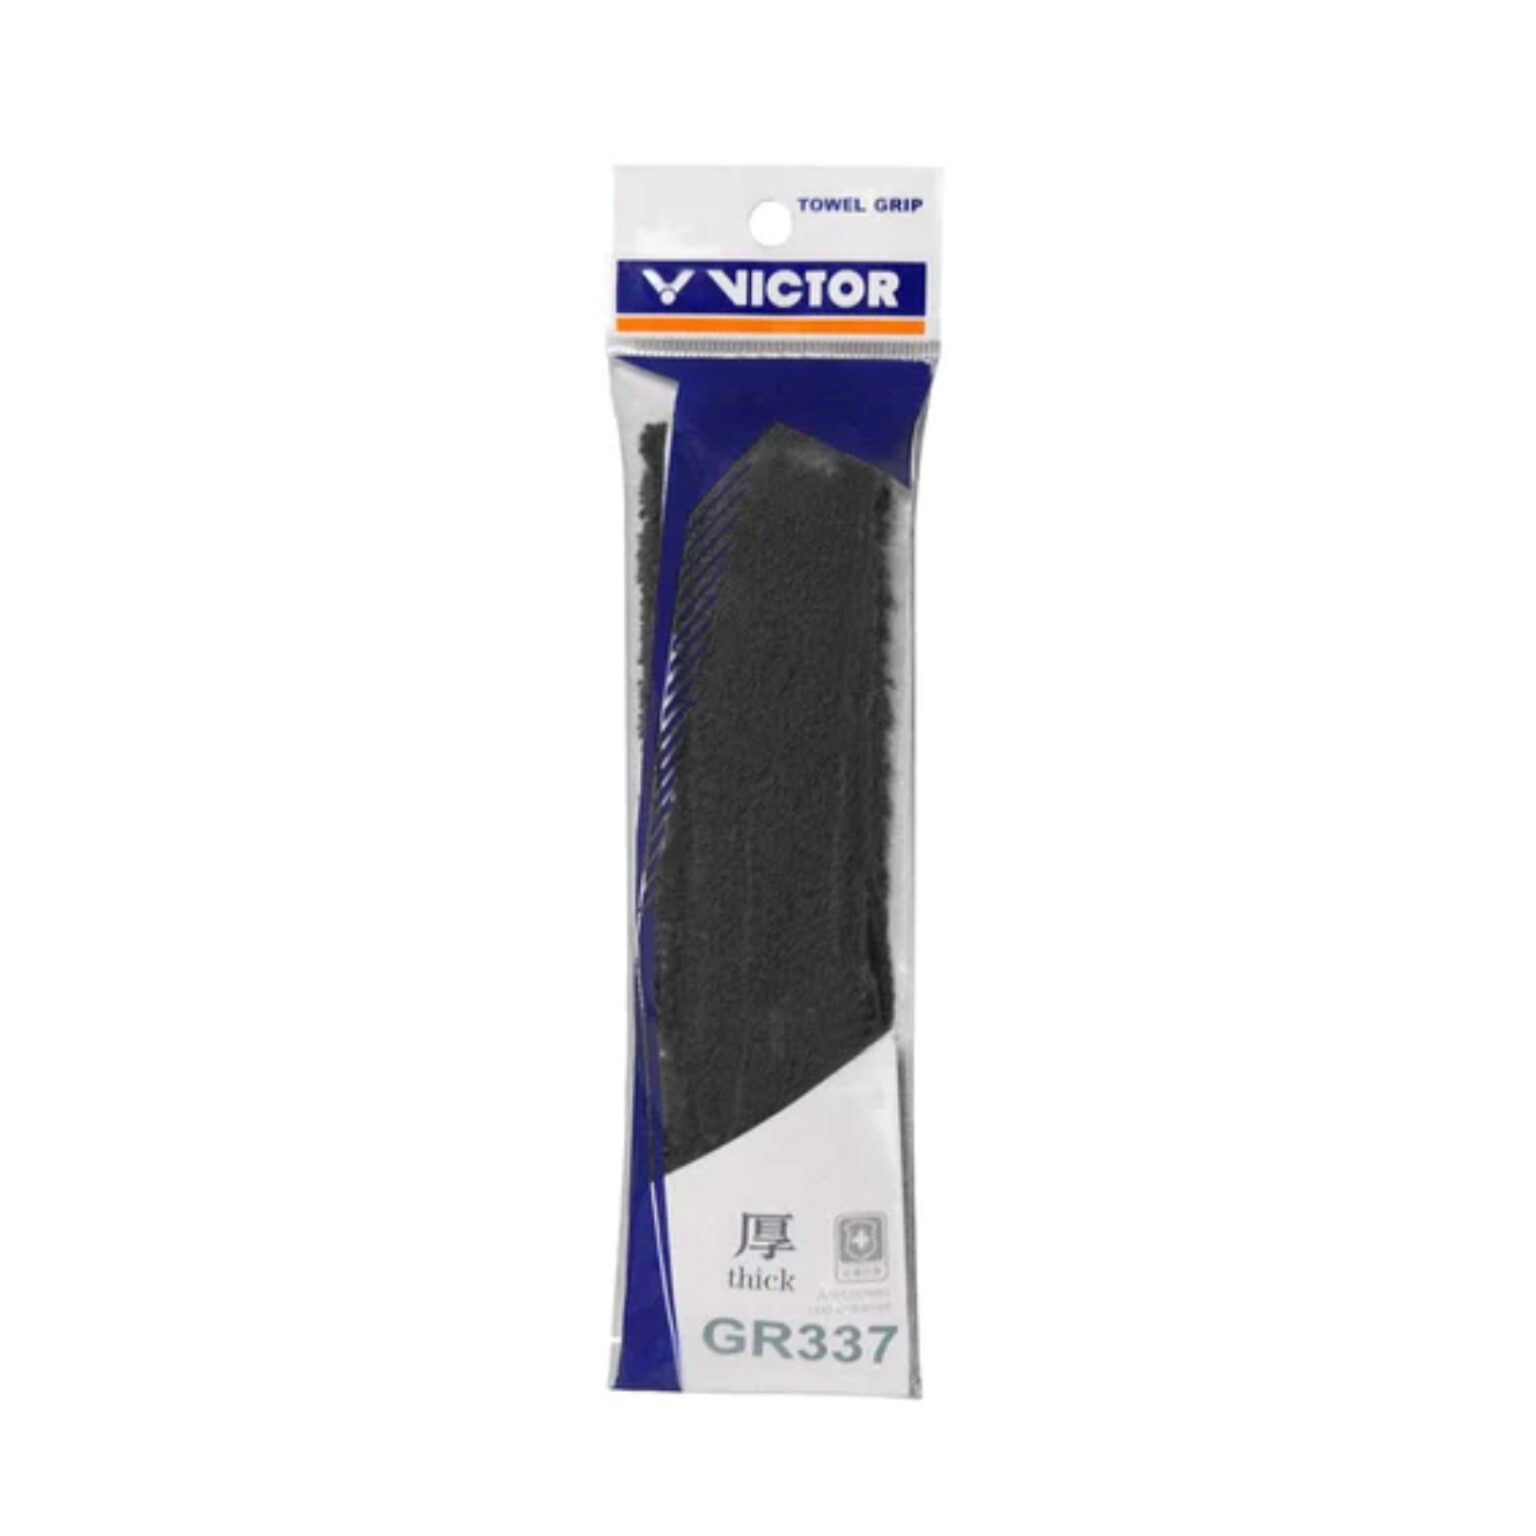 Victor GR337 Towel Grip | Towel Grip → Great price